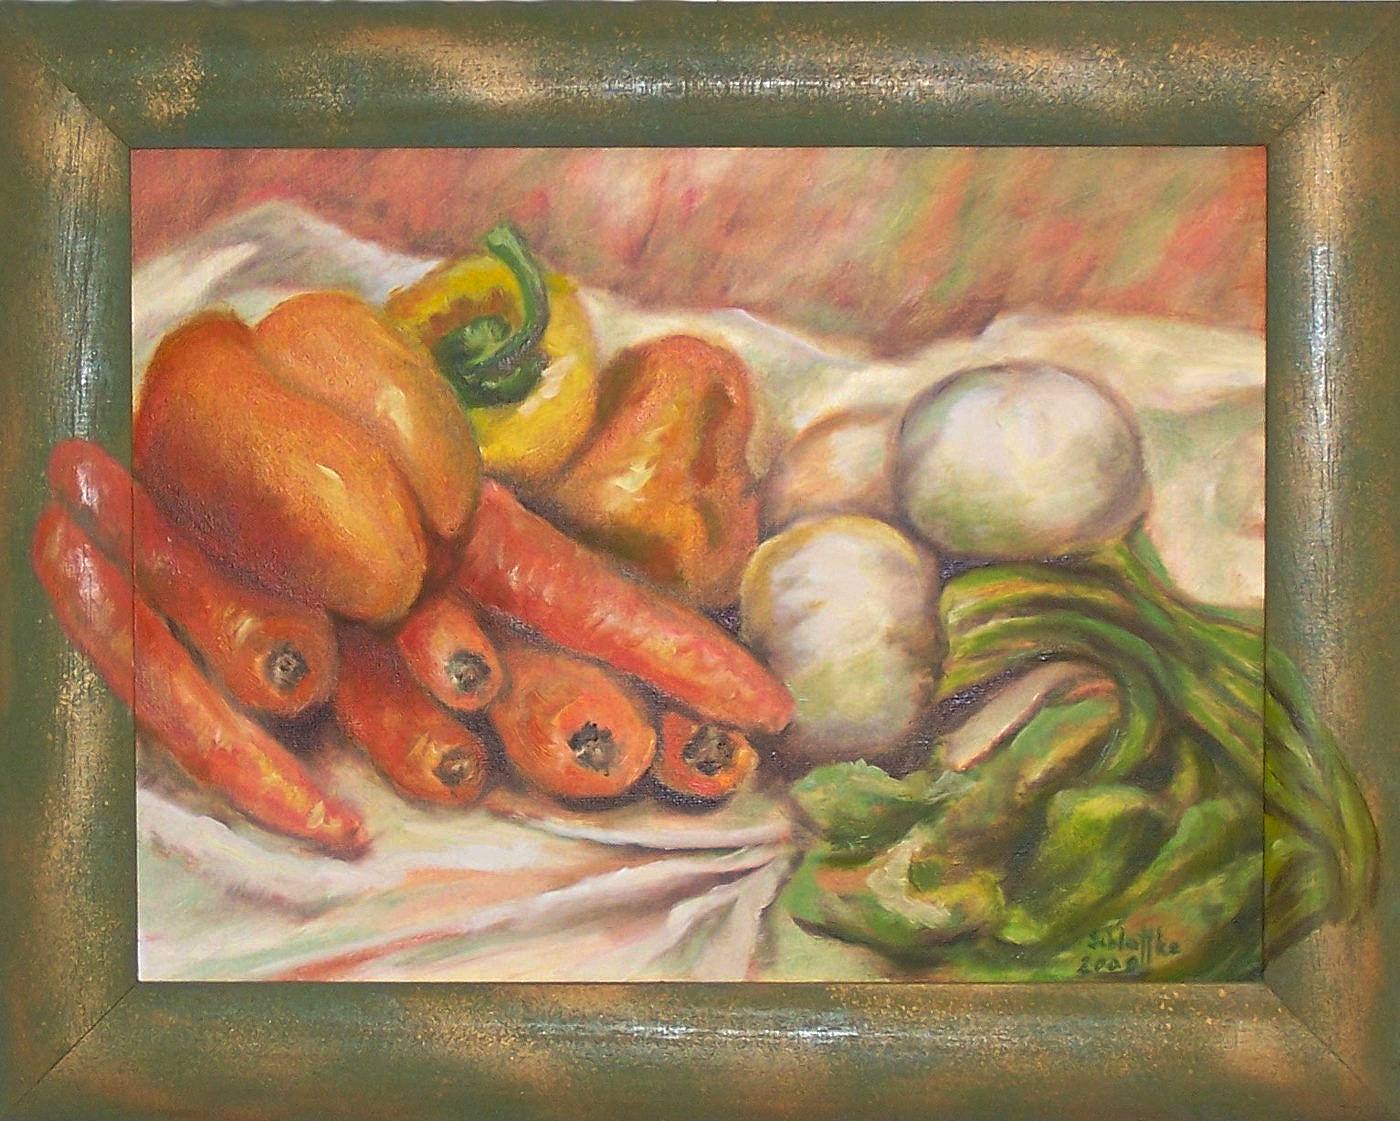 Mohrrüben und anderes Gemüse auf einem weißen Tuch. Das Bild ist in einem grünen Rahmen, der teilweise übermalt ist. Gemalt in Oel im Jahr 2008